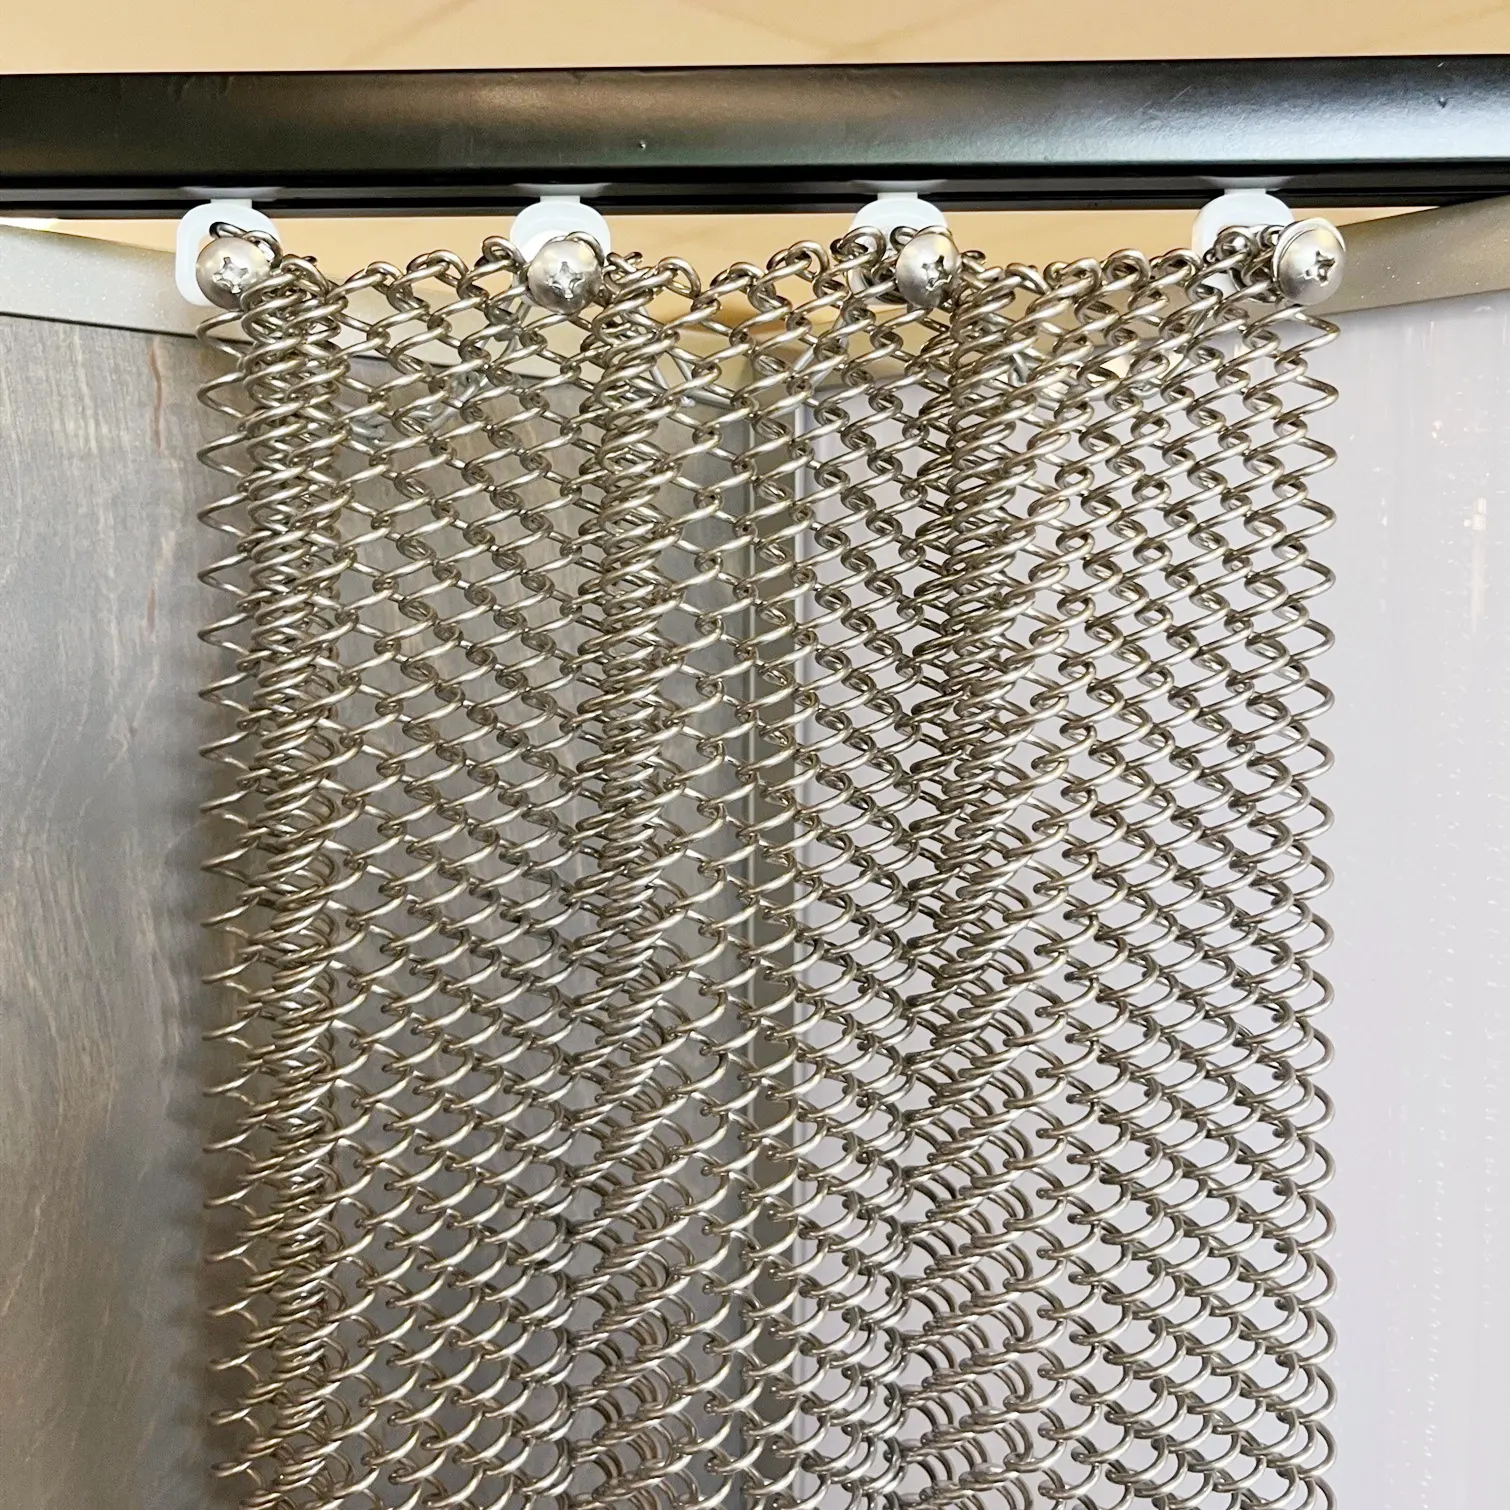 Cortinas de red de alambre tejido decorativo de Metal, cortina de partición de mampara de malla metálica